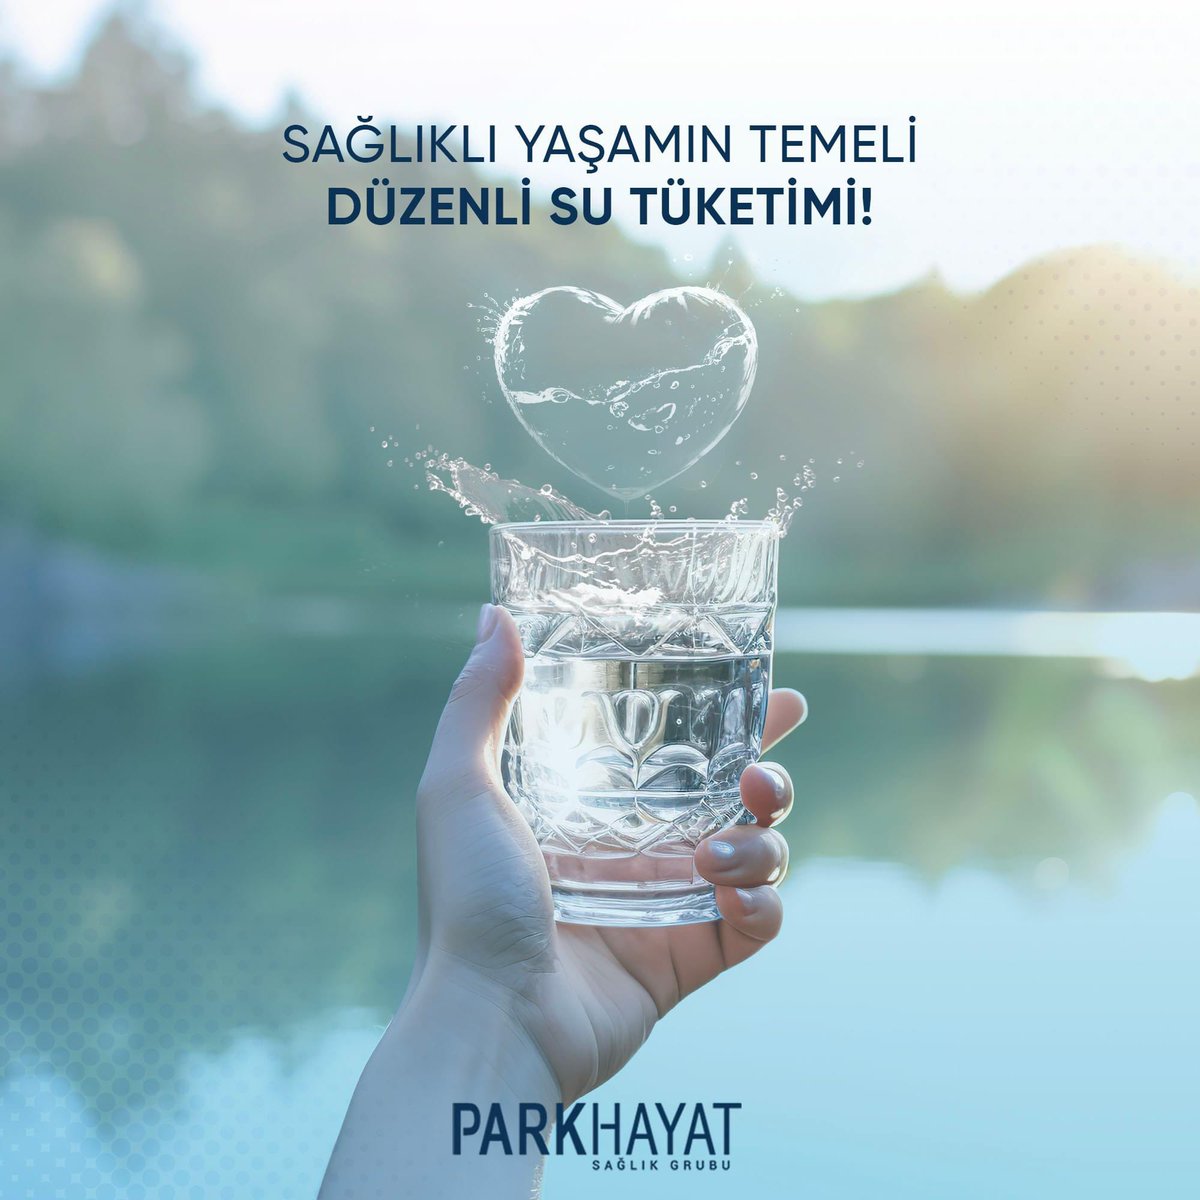 Sağlıklı bir yaşam için düzenli su tüketmek gerekir. Su, vücudun yaklaşık %60'ını oluşturur. Başta böbreklerimiz olmak üzere pek çok organımızın sağlığı için günlük düzenli aralıklarla su tüketmeye önem gösterin. #Afyonkarahisar #Kütahya #Akşehir